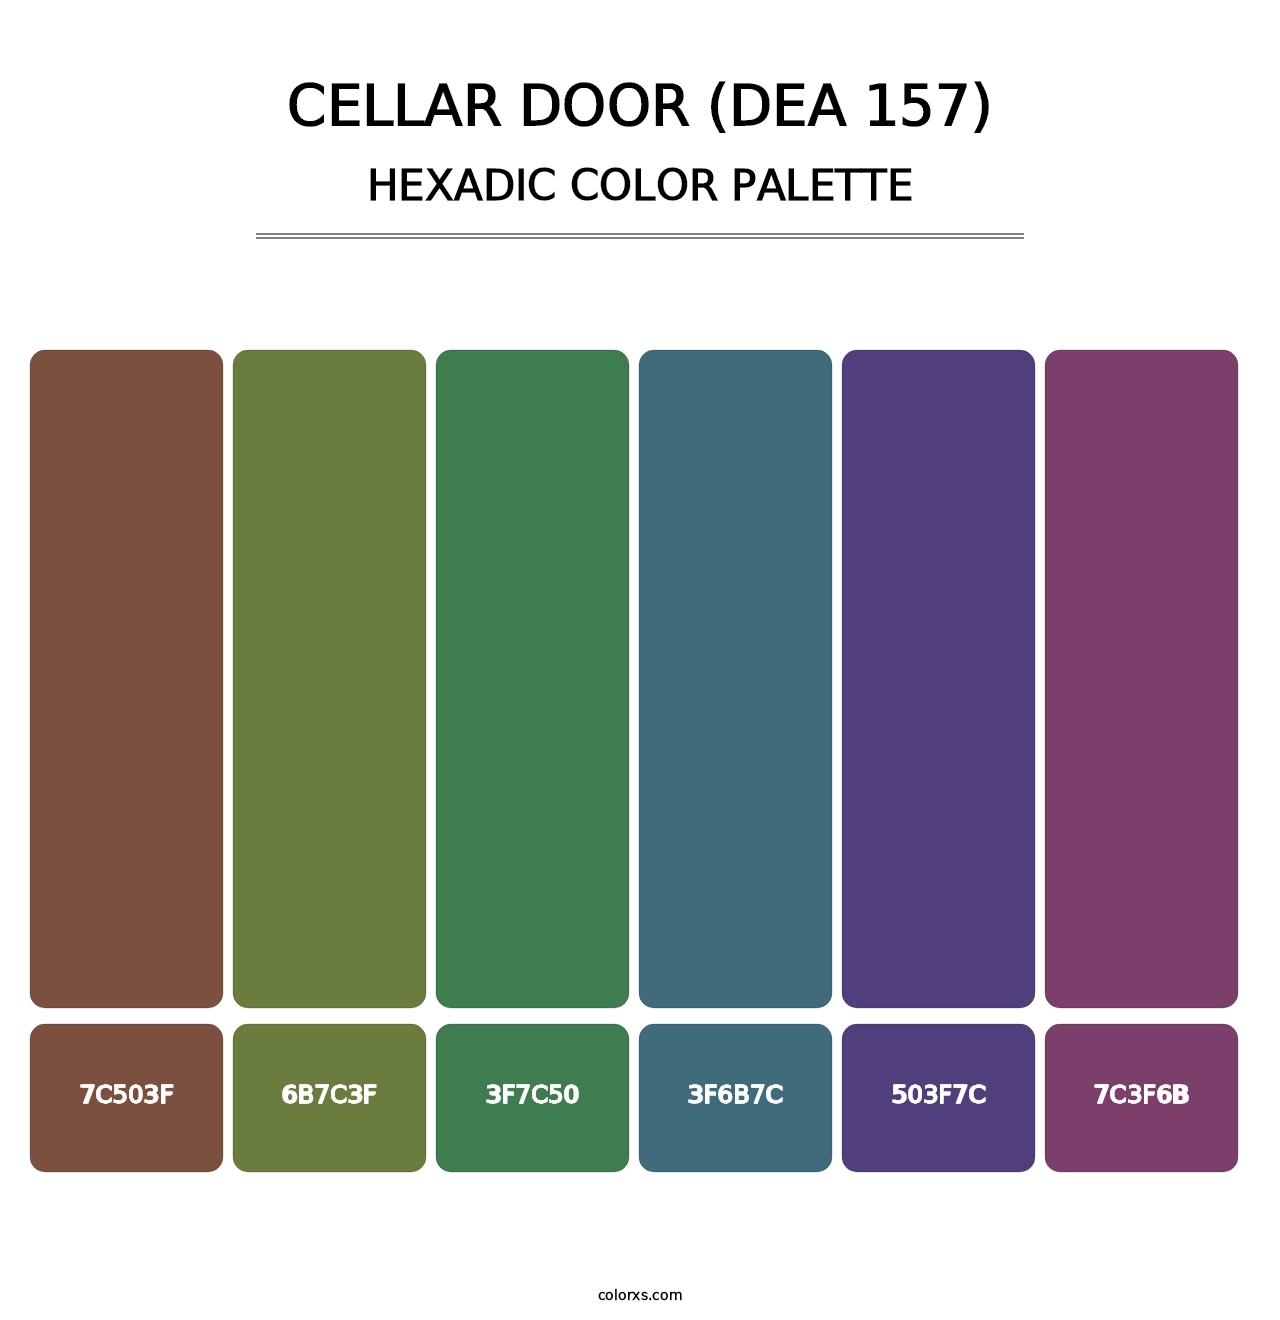 Cellar Door (DEA 157) - Hexadic Color Palette